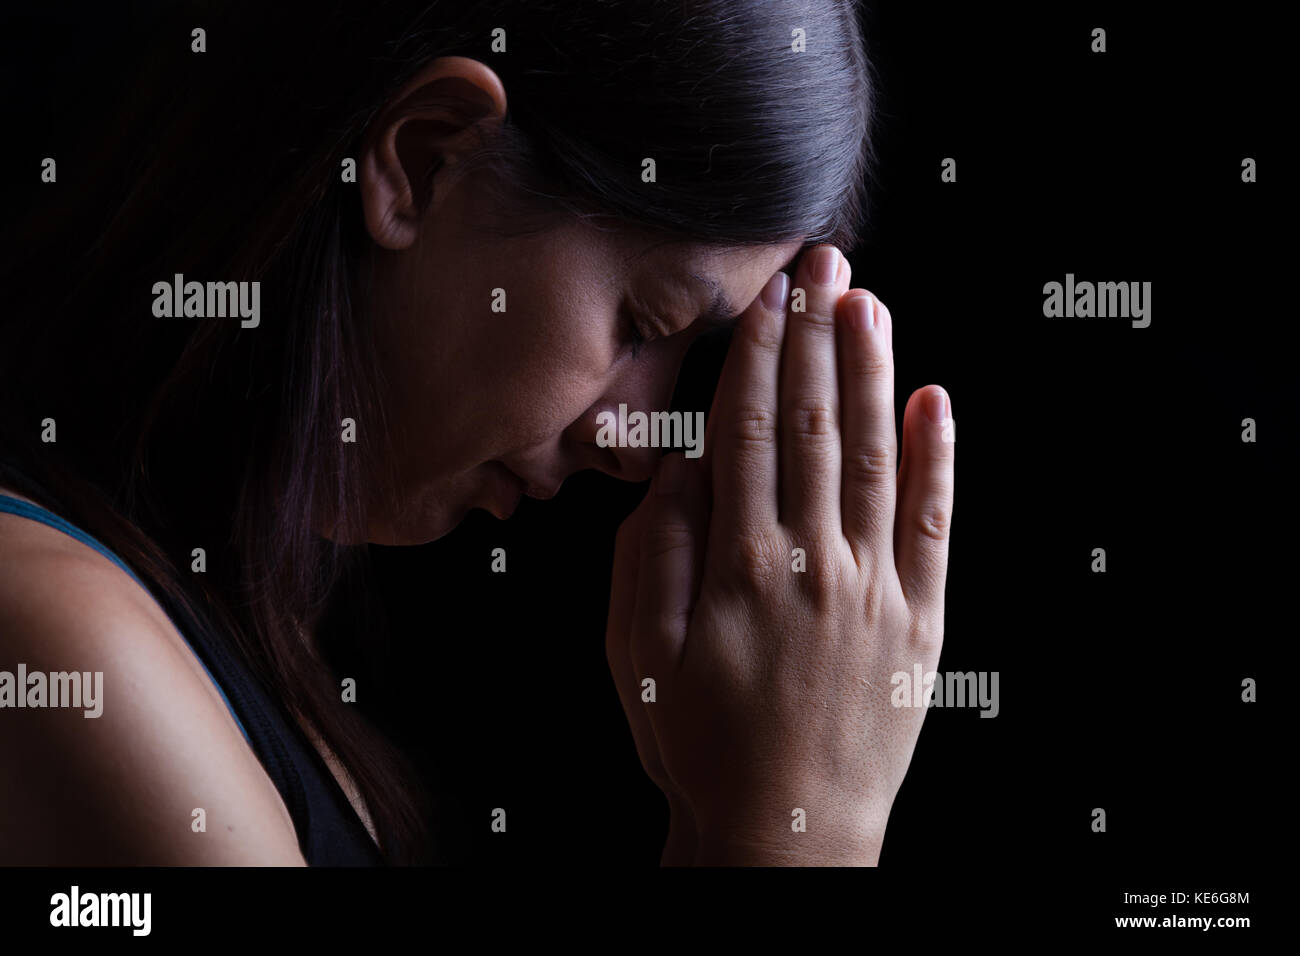 Femme fidèle, priant les mains pliées dans le culte à Dieu avec la tête en bas et les yeux fermés dans l'inspiration religieuse, sur un fond noir / portrait prière Banque D'Images